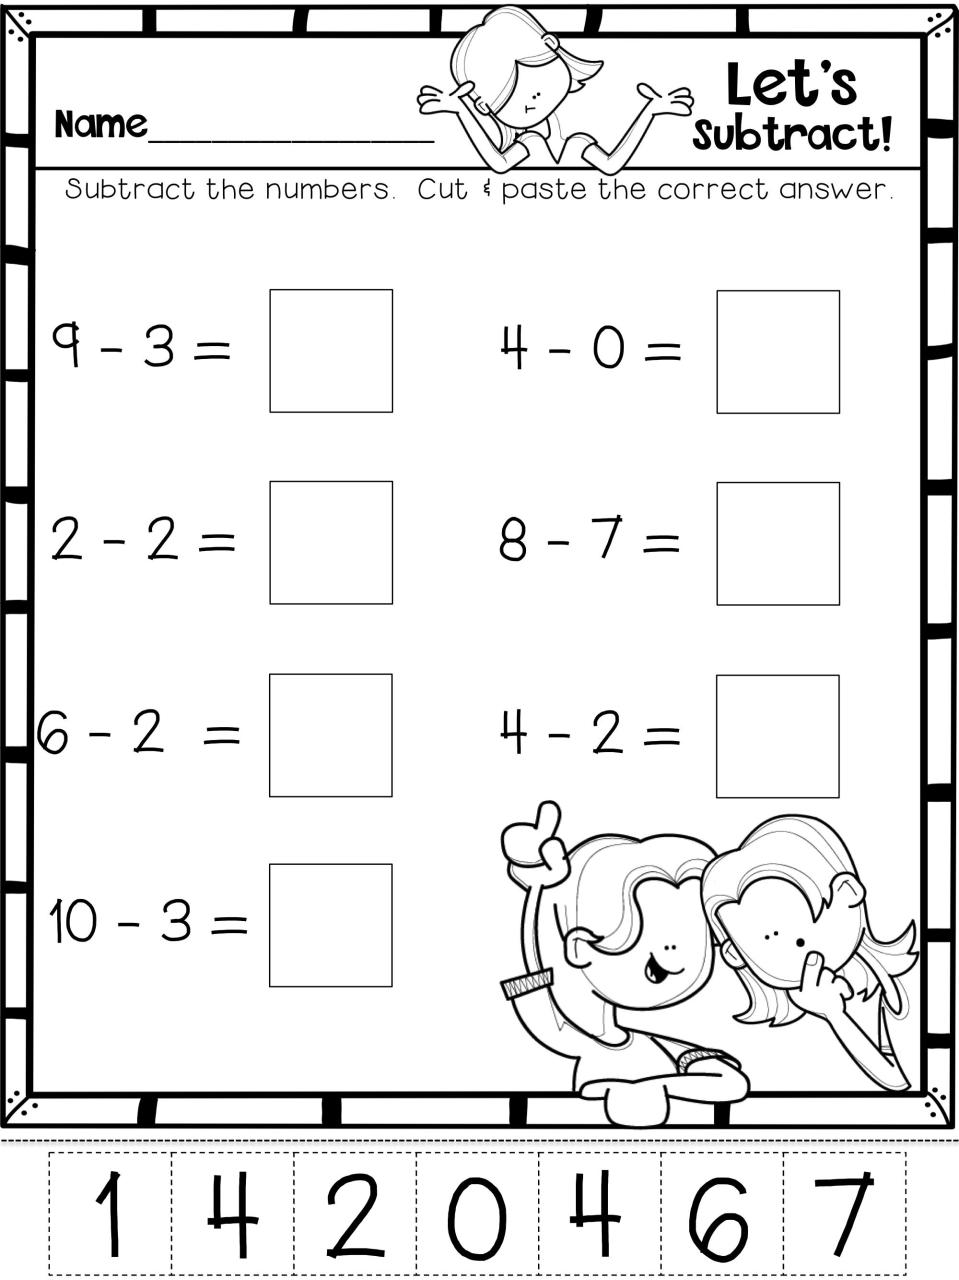 Subtraction Kindergarten subtraction worksheets, Kindergarten math